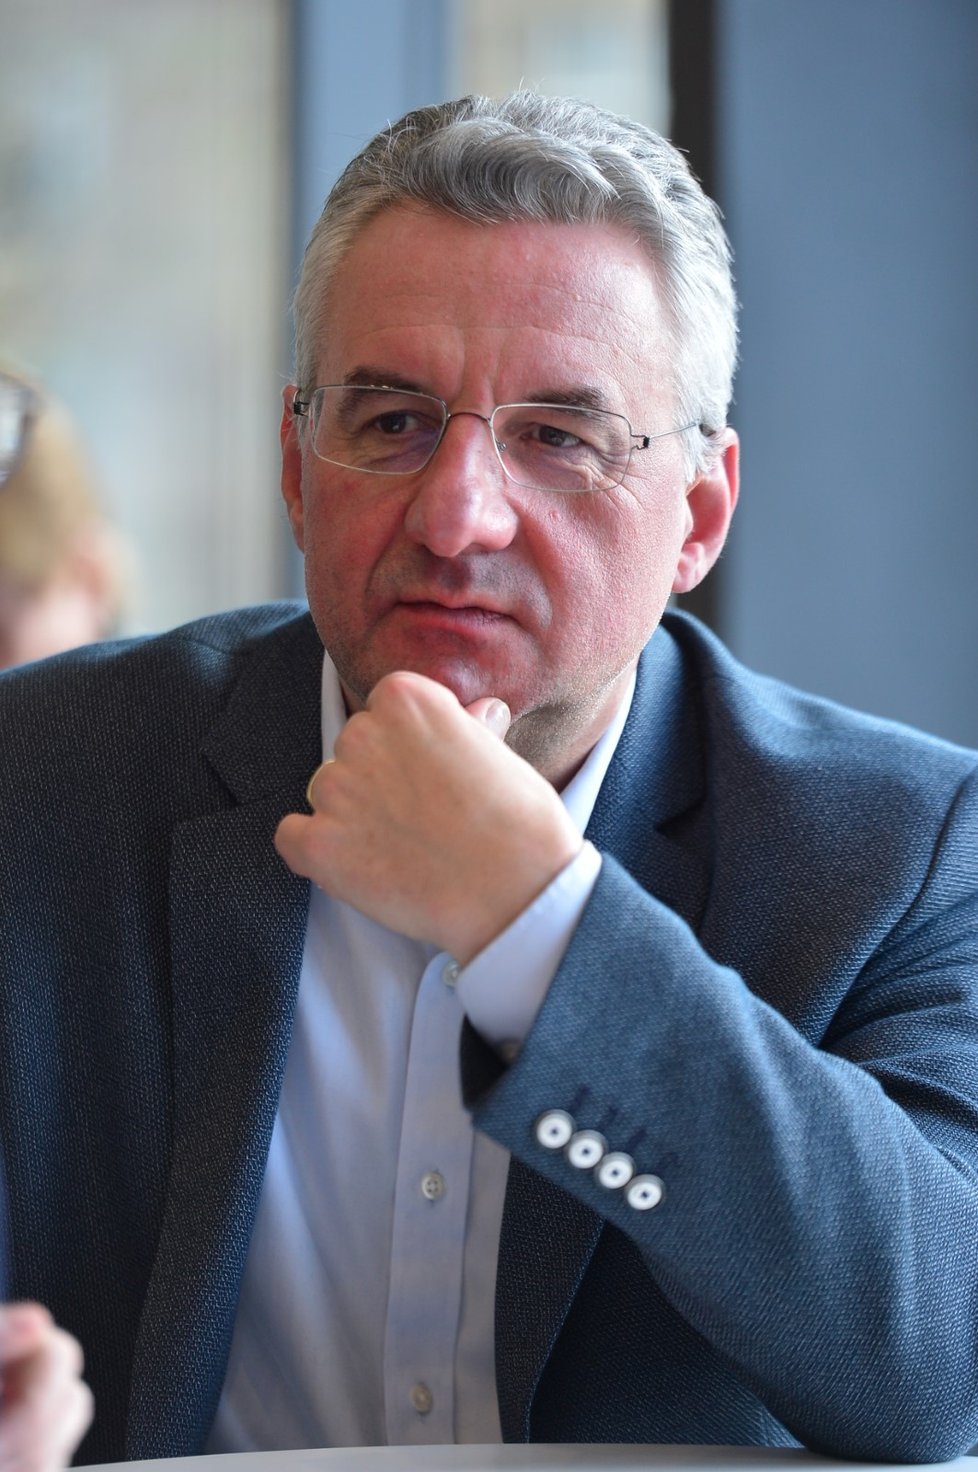 Lídr ODS do eurovoleb Jan Zahradil v rozhovoru pro Blesk (14. 2. 2019)